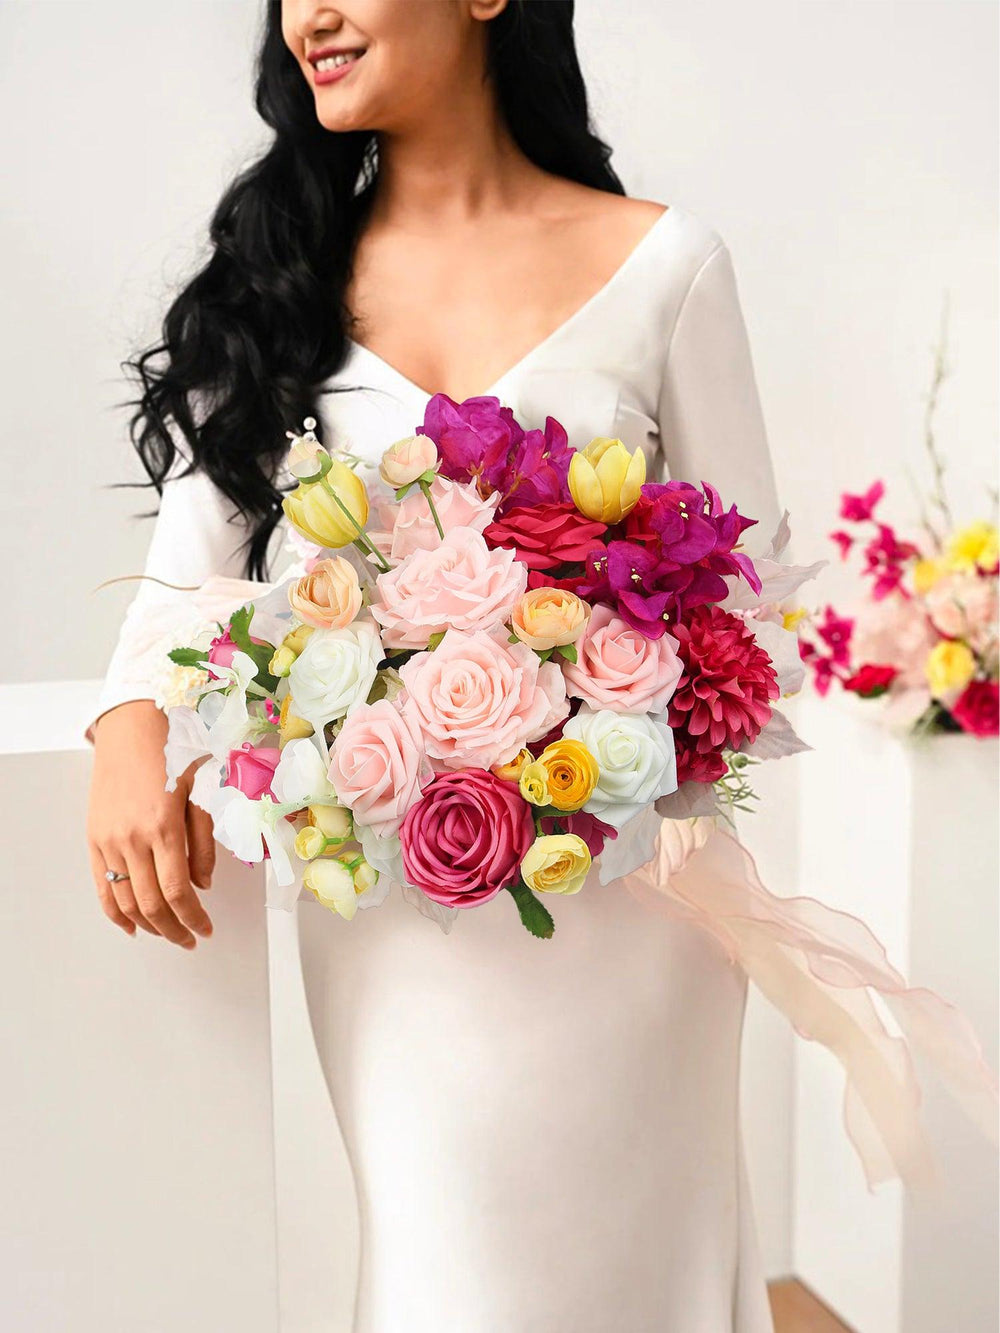 15.7 inch wide Magenta Pink & Blush Bridal Bouquet - Rinlong Flower